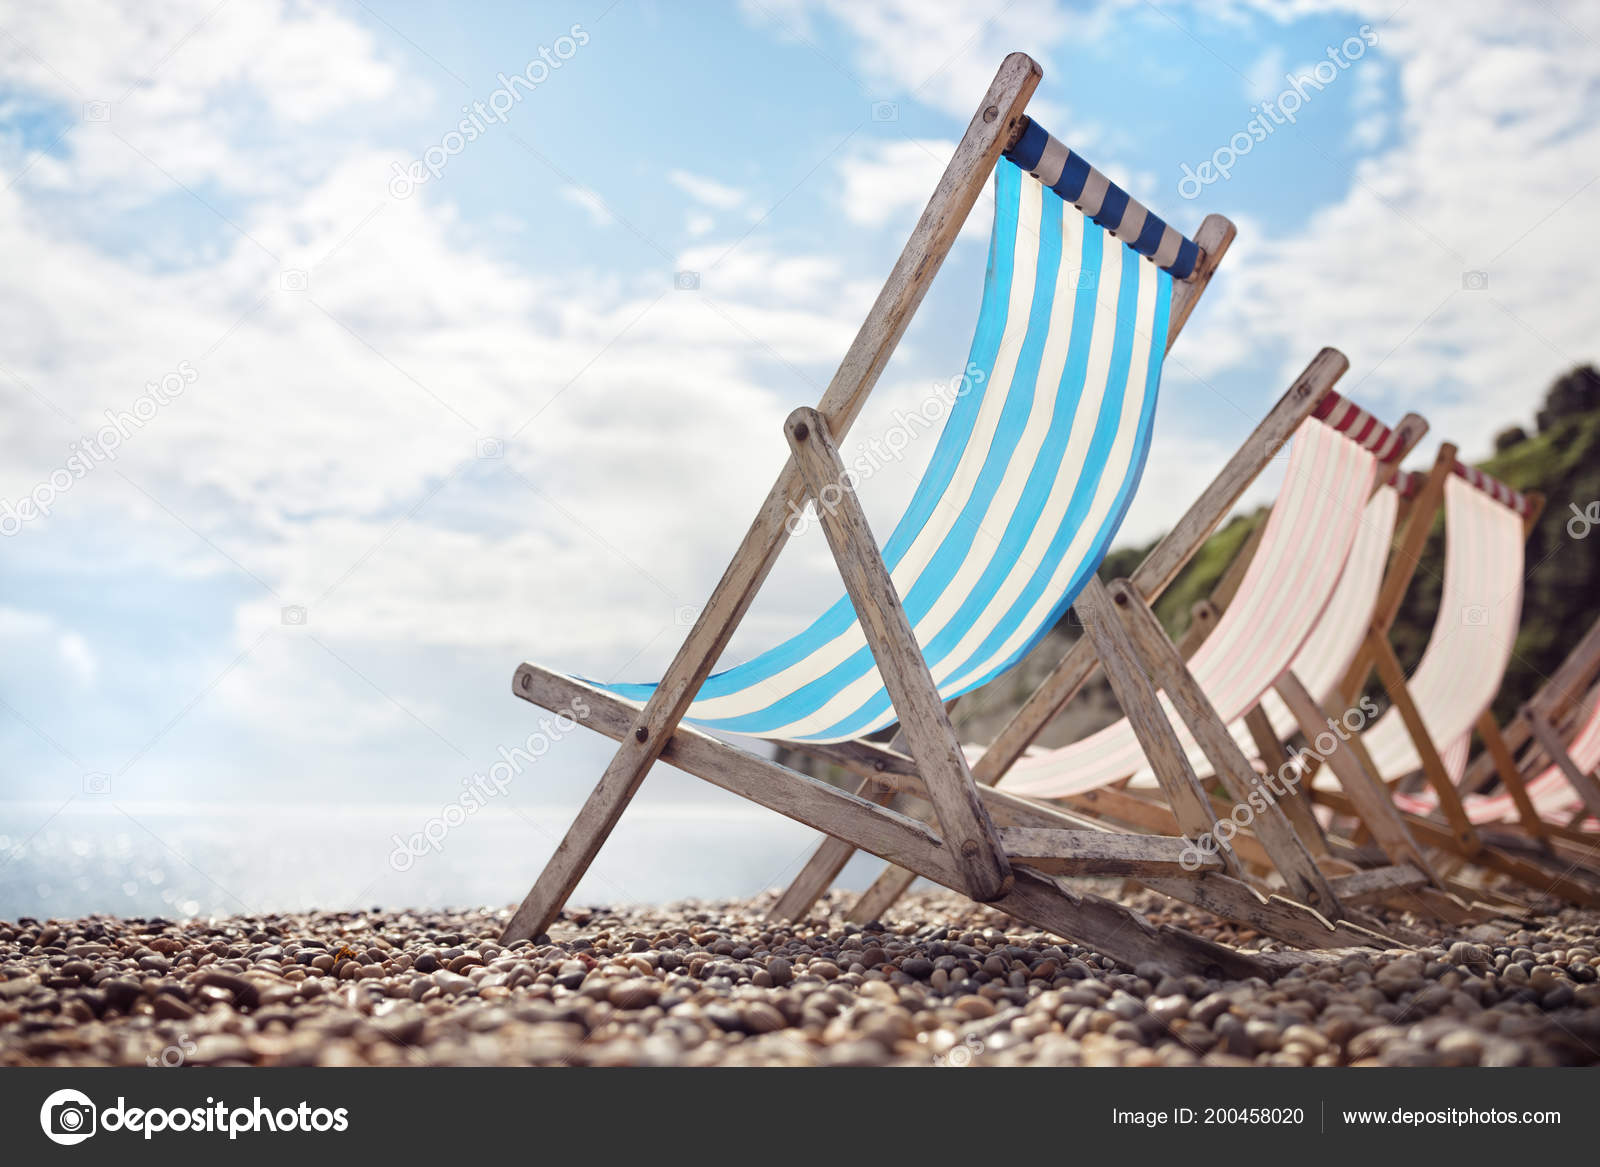 kennisgeving gracht Floreren Zomer Vakantie Strand Ligstoelen Aan Zee ⬇ Stockfoto, rechtenvrije foto  door © BrianAJackson #200458020